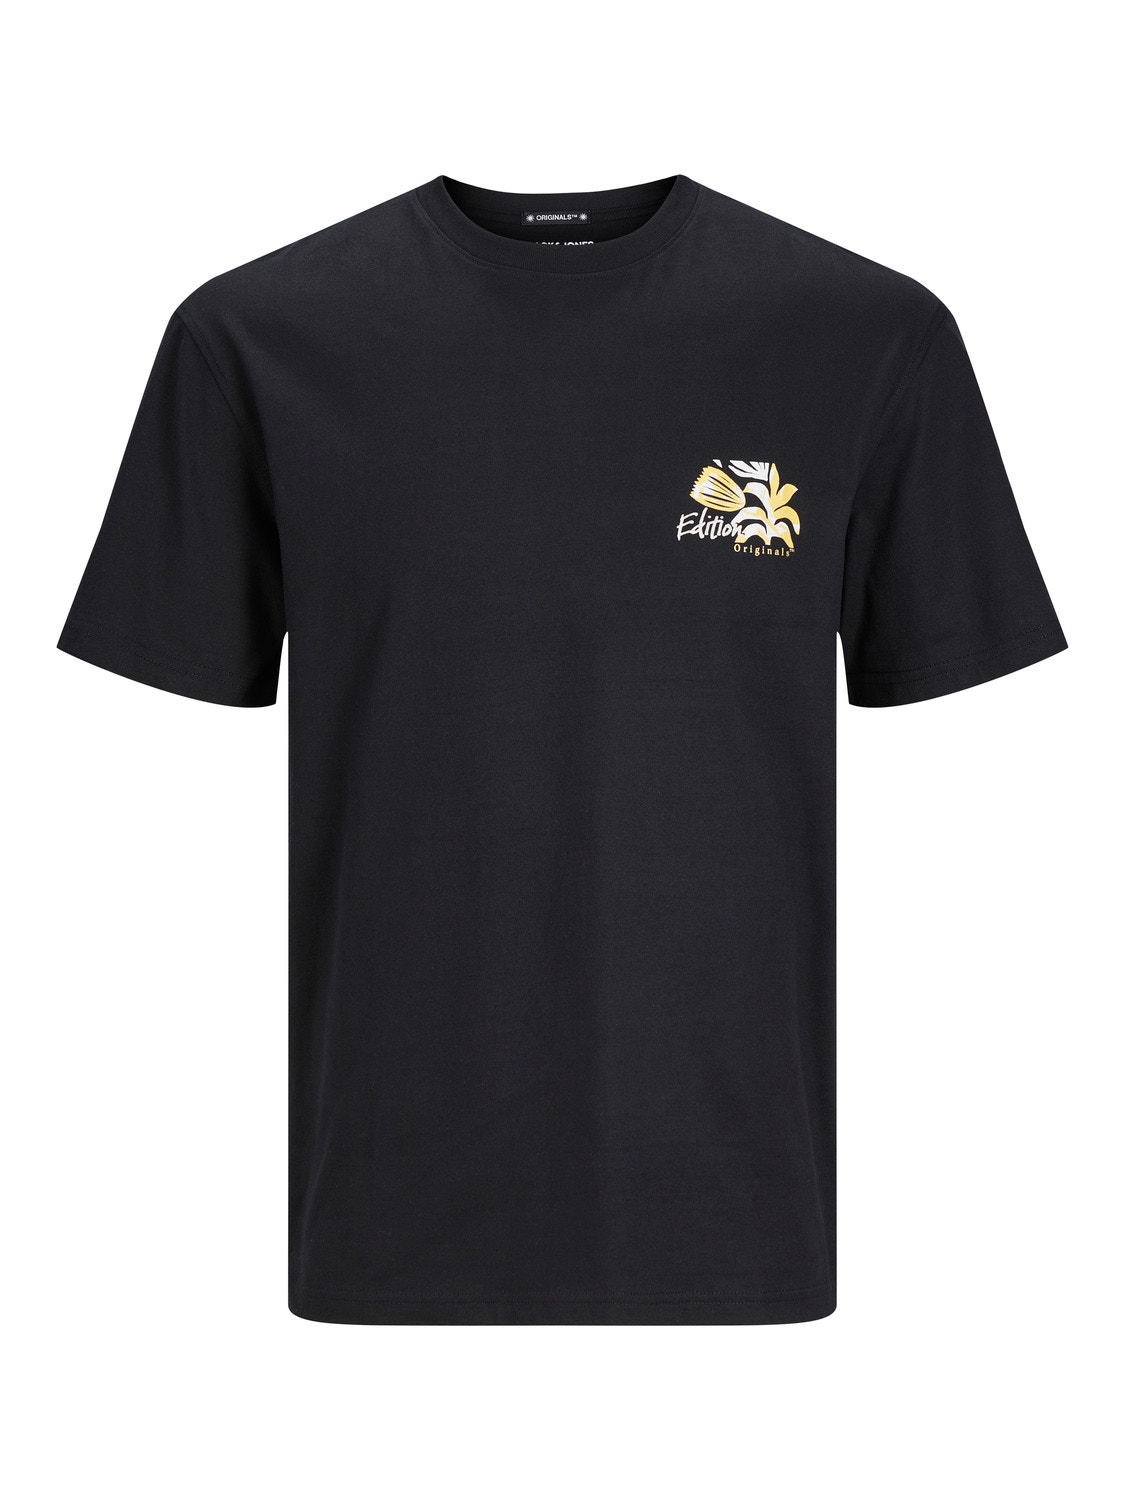 Jack & Jones T-shirt Stampato Mini -Black - 12261802